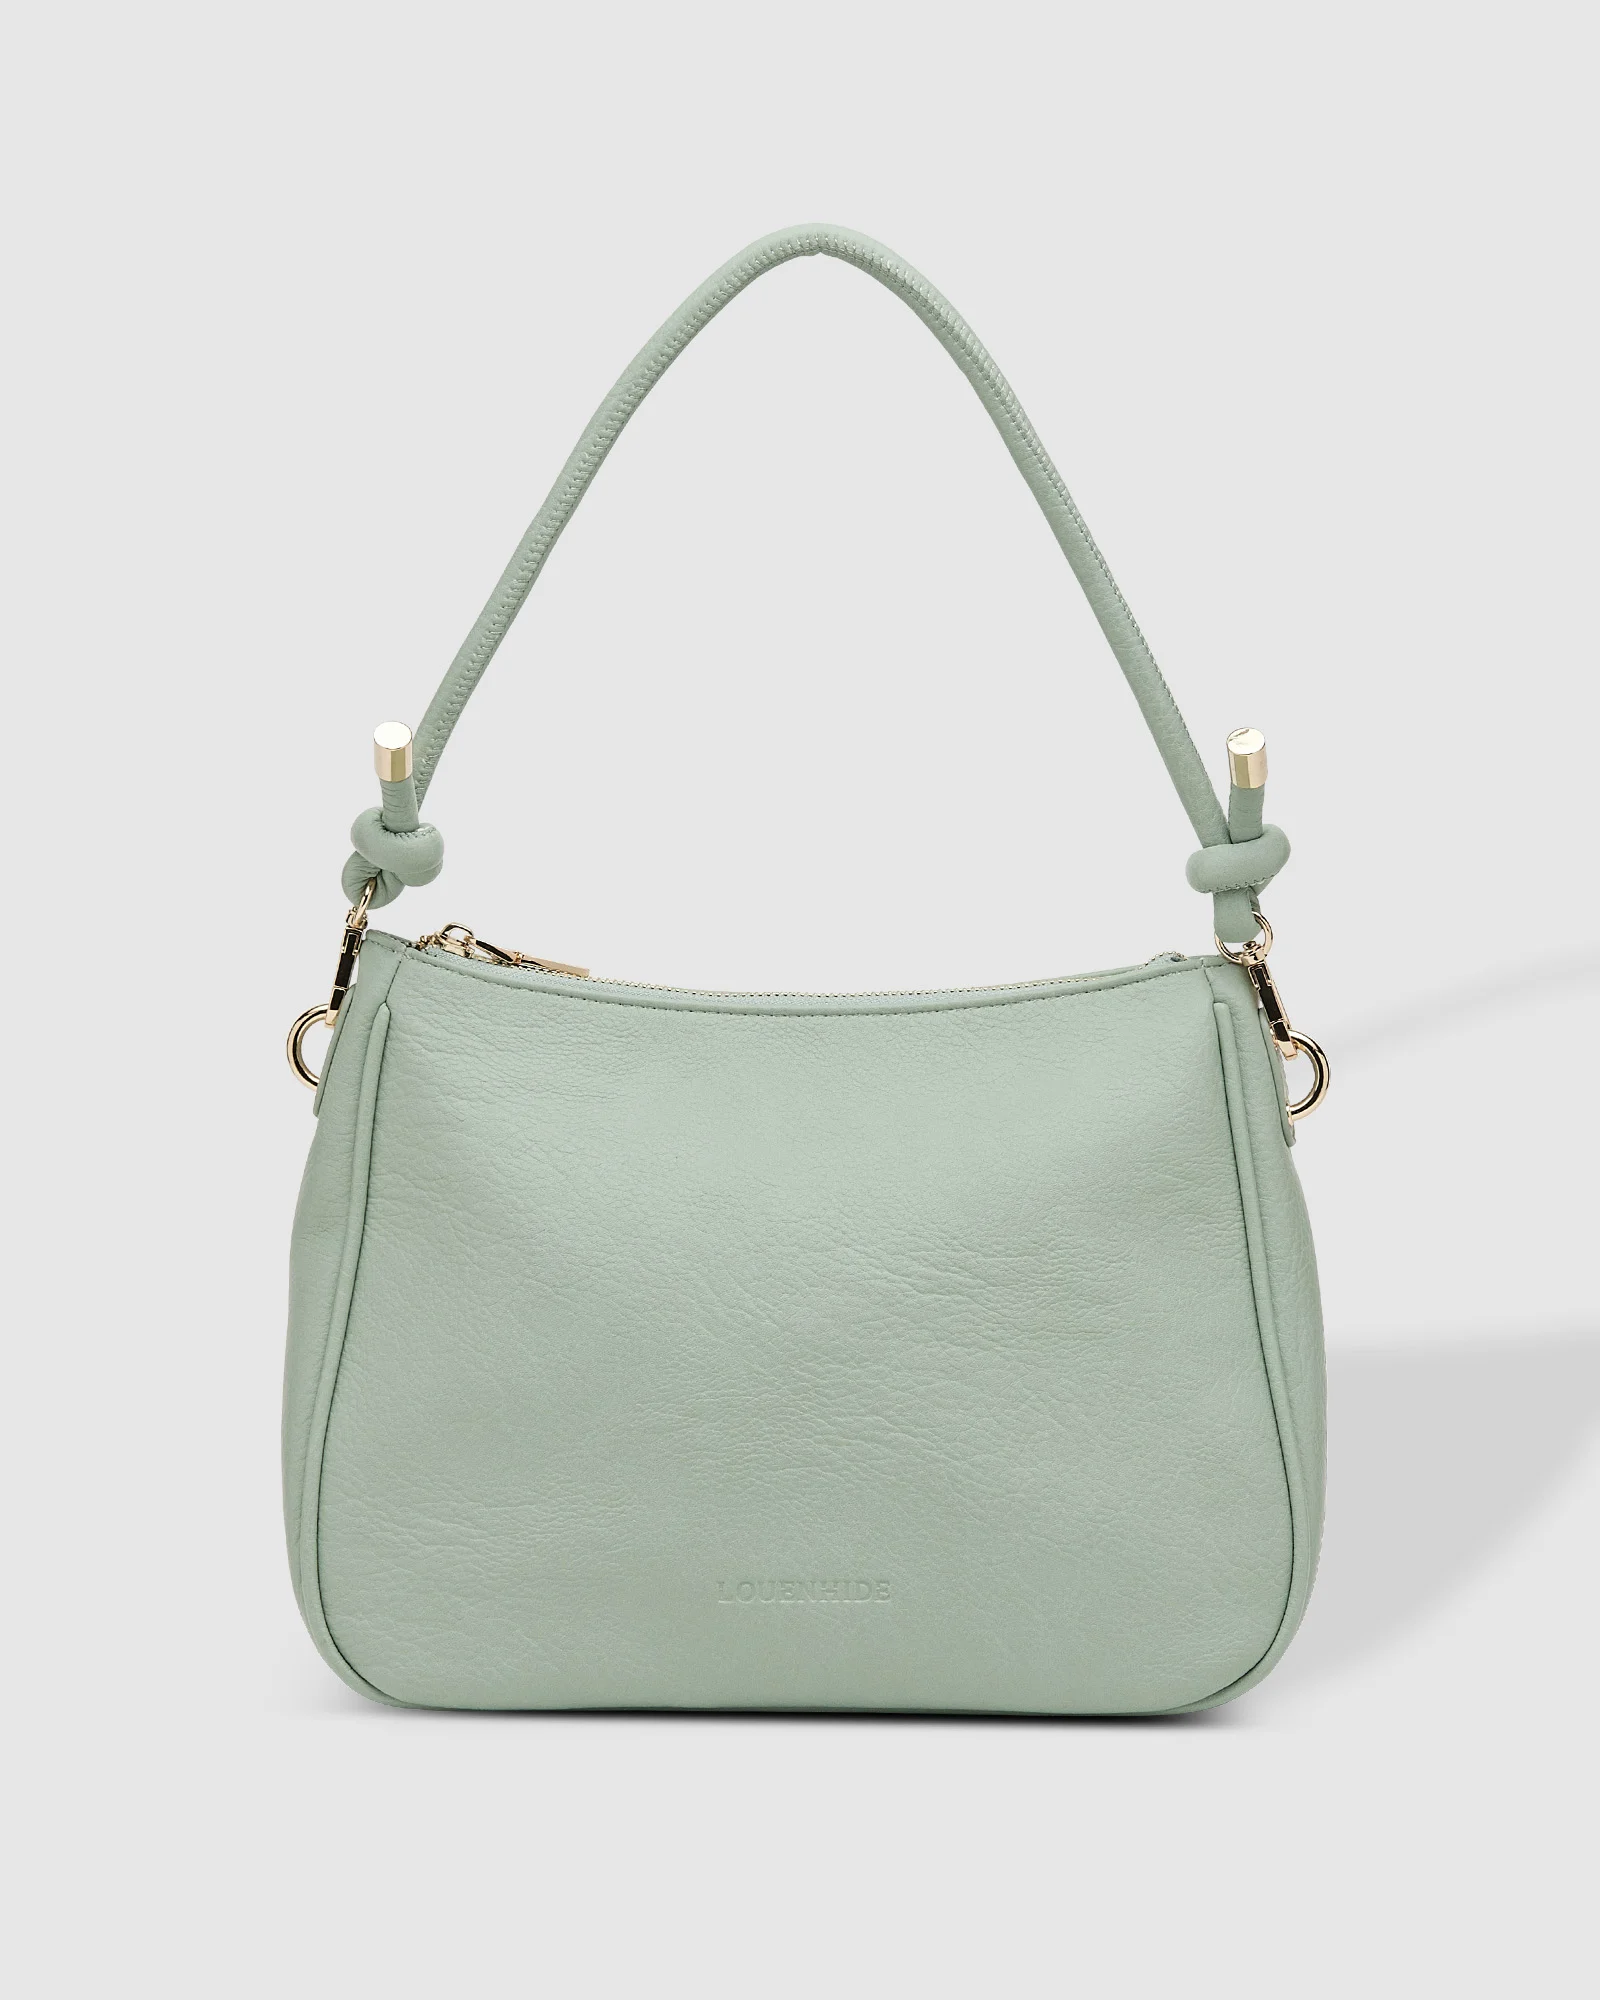 Louenhide Baby Remi Shoulder Bag - Seafoam Accessories - Other Accessories - Handbags & Wallets by Louenhide | Grace the Boutique